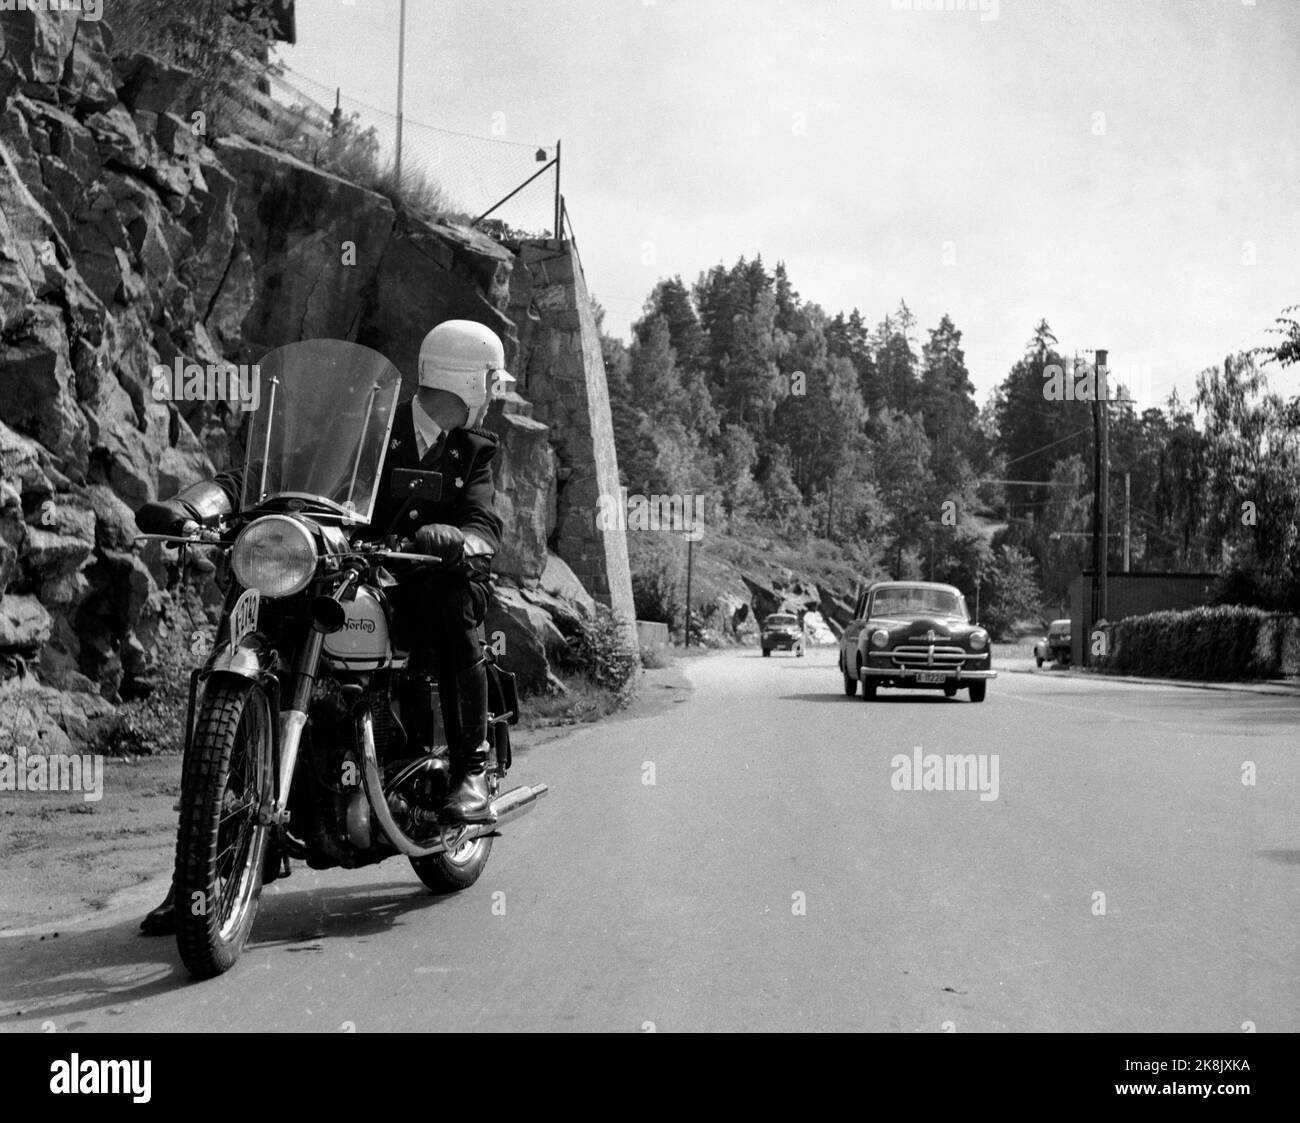 Oslo 19540729 das Justizministerium ordnet häufige Verkehrskontrollen an, um einen Rückgang der ständig steigenden Zahl von Unfällen auf den Straßen zu gewährleisten. Hier wartet eine Verkehrskontrolle, ein Motorrad-Verkehrskorst auf das nächste Auto, das er stoppen wird. Foto: NTB / NTB Stockfoto